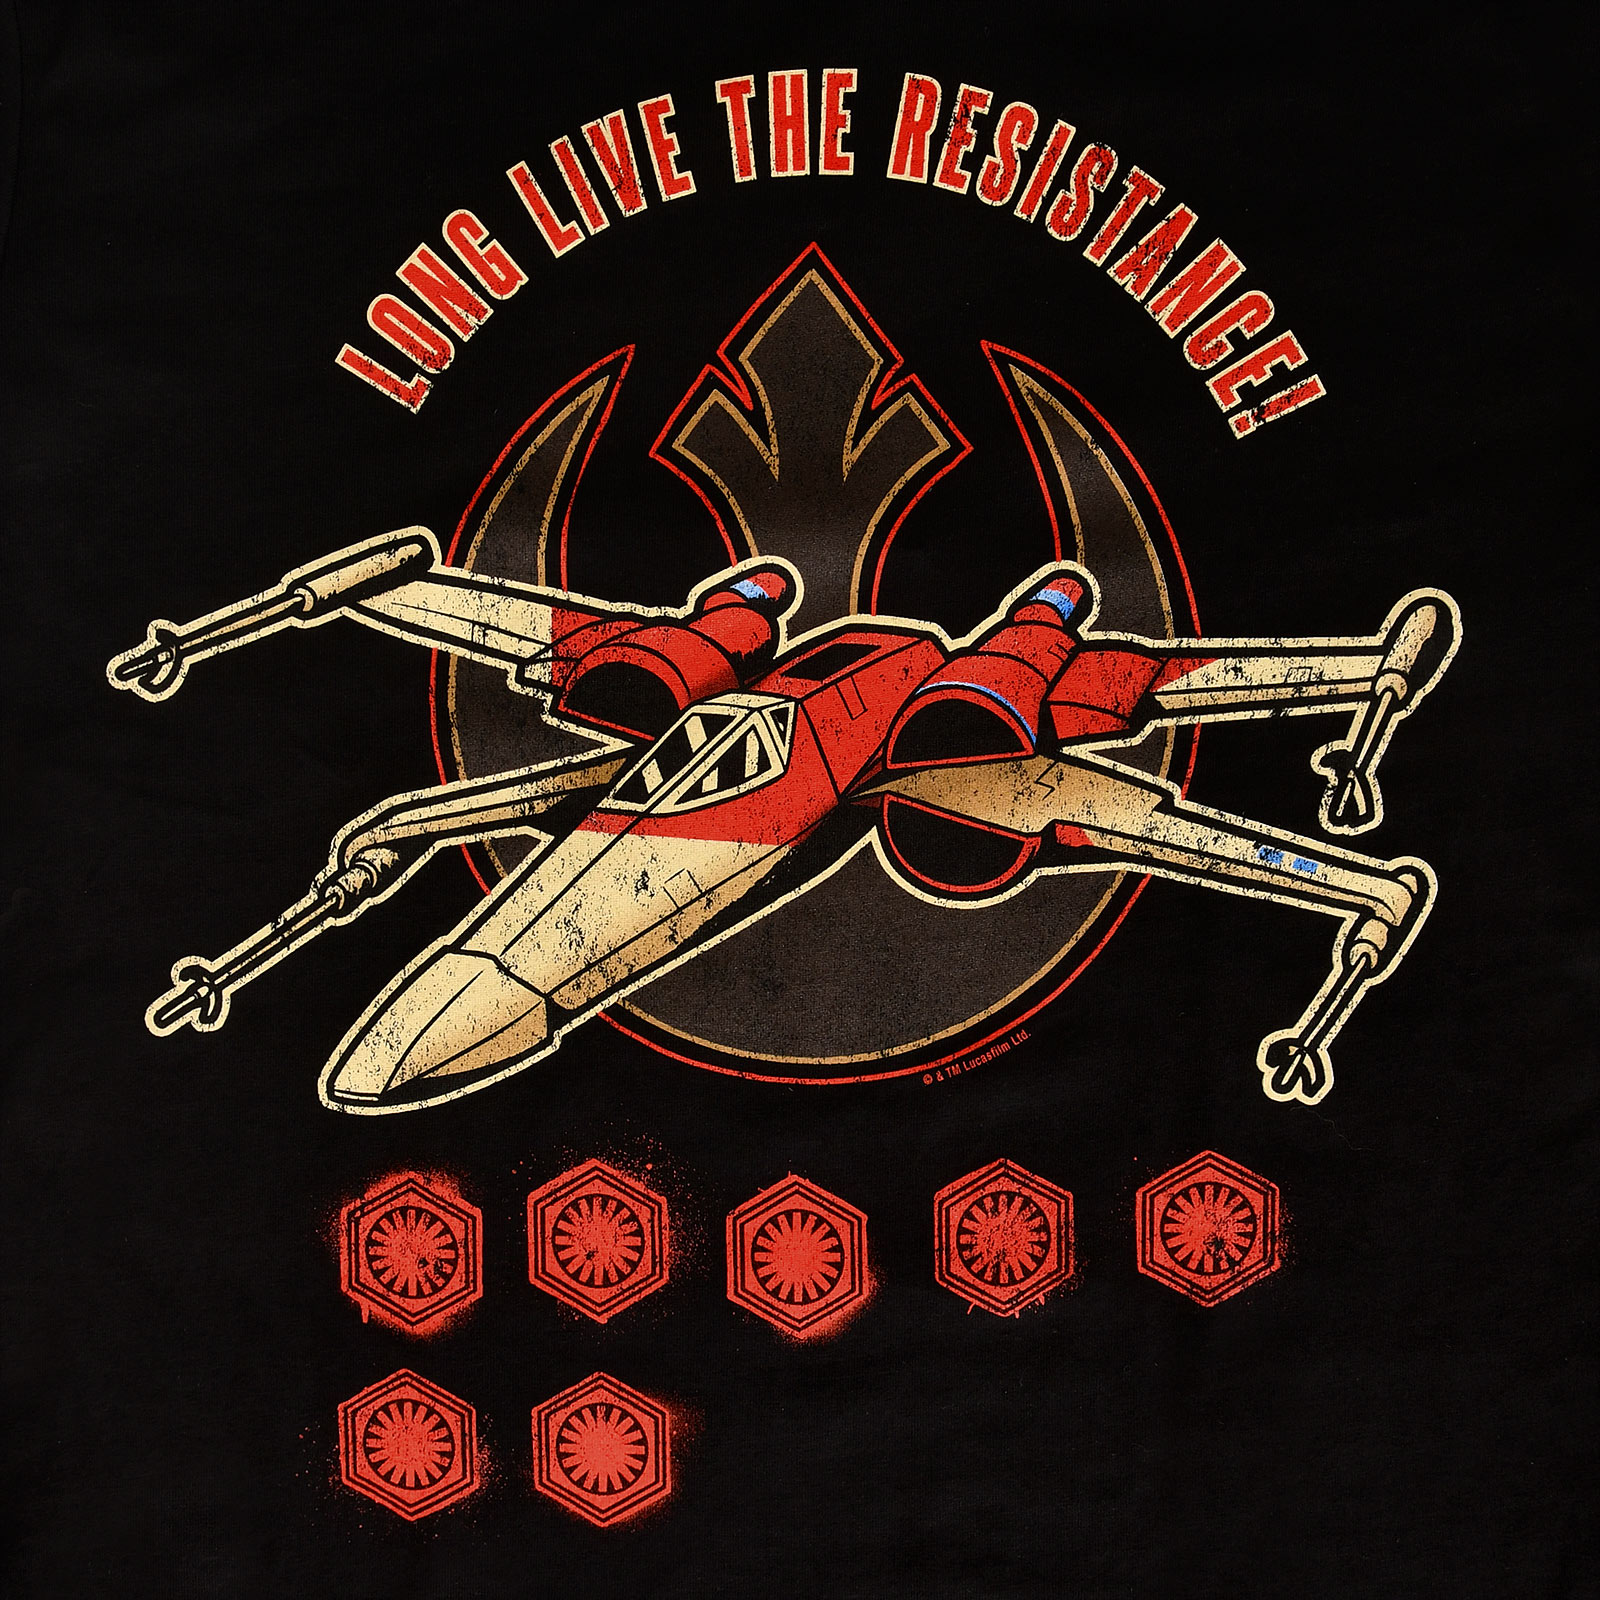 Star Wars - Long Live The Resistance T-Shirt zwart